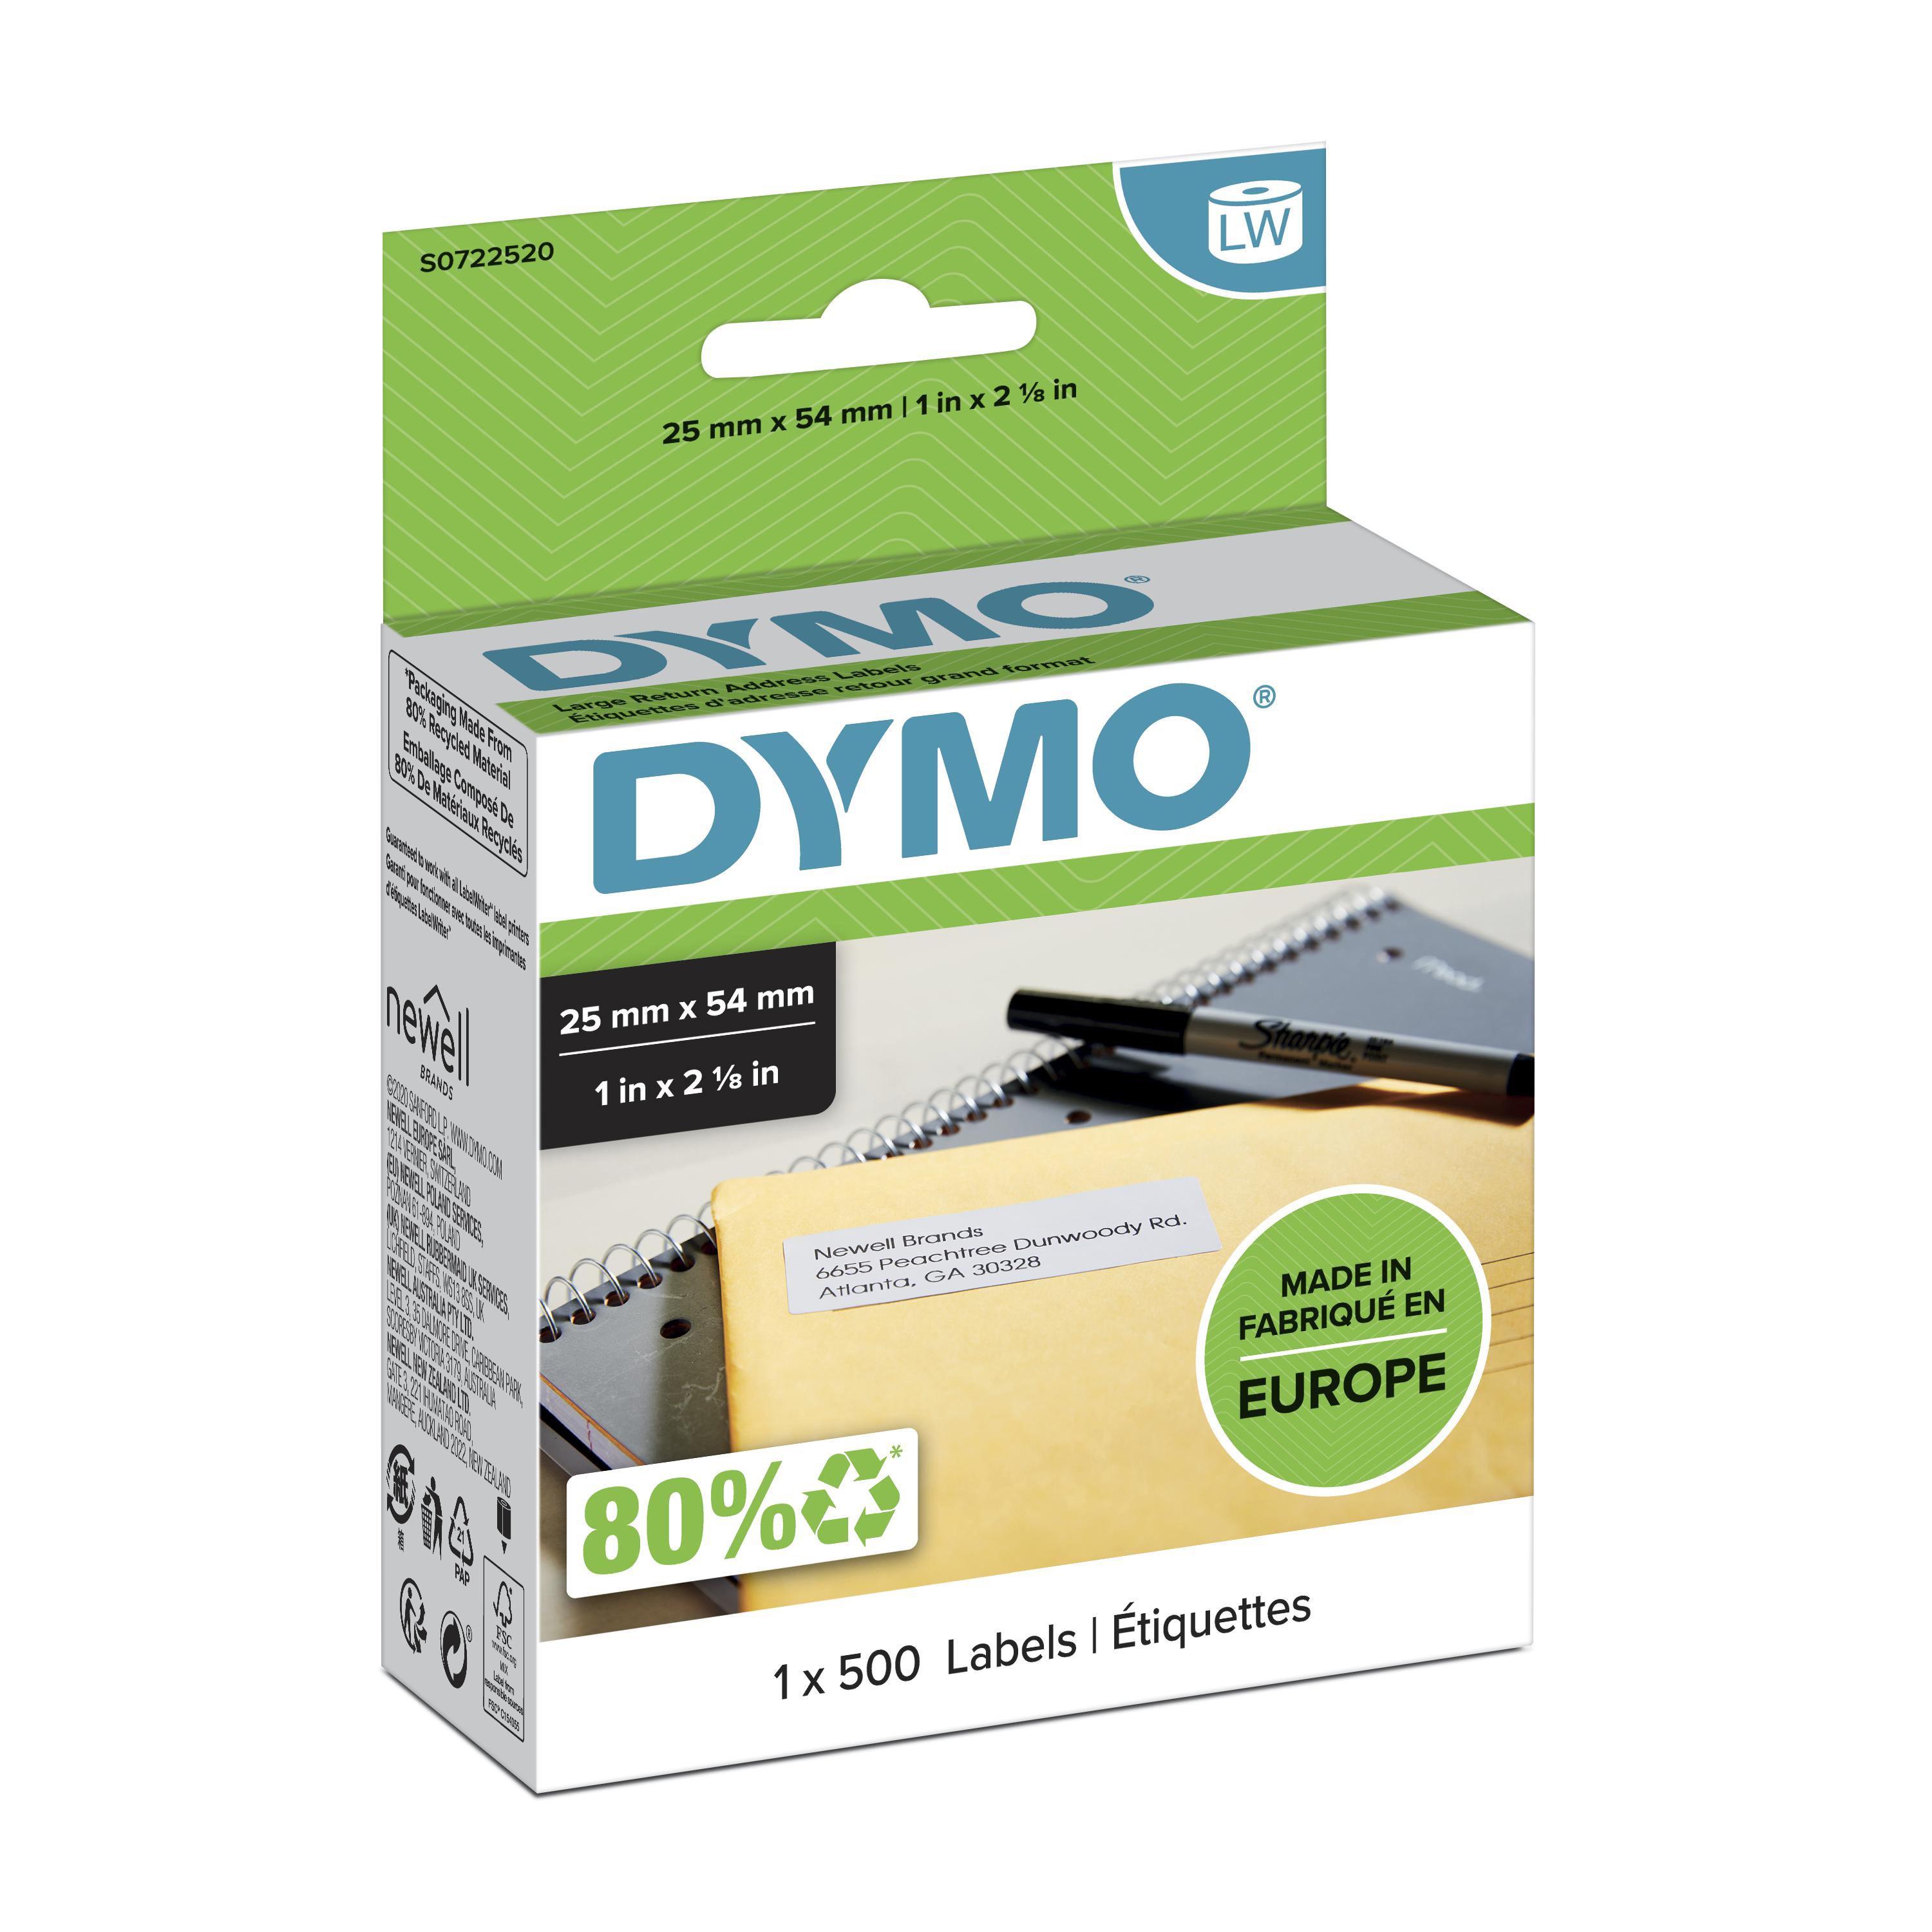 DYMO | Original Etikett für LabelWriter | Rücksendung | weiß | permanent haftend | 1 x 500 Etiketten | 25 x 54 mm